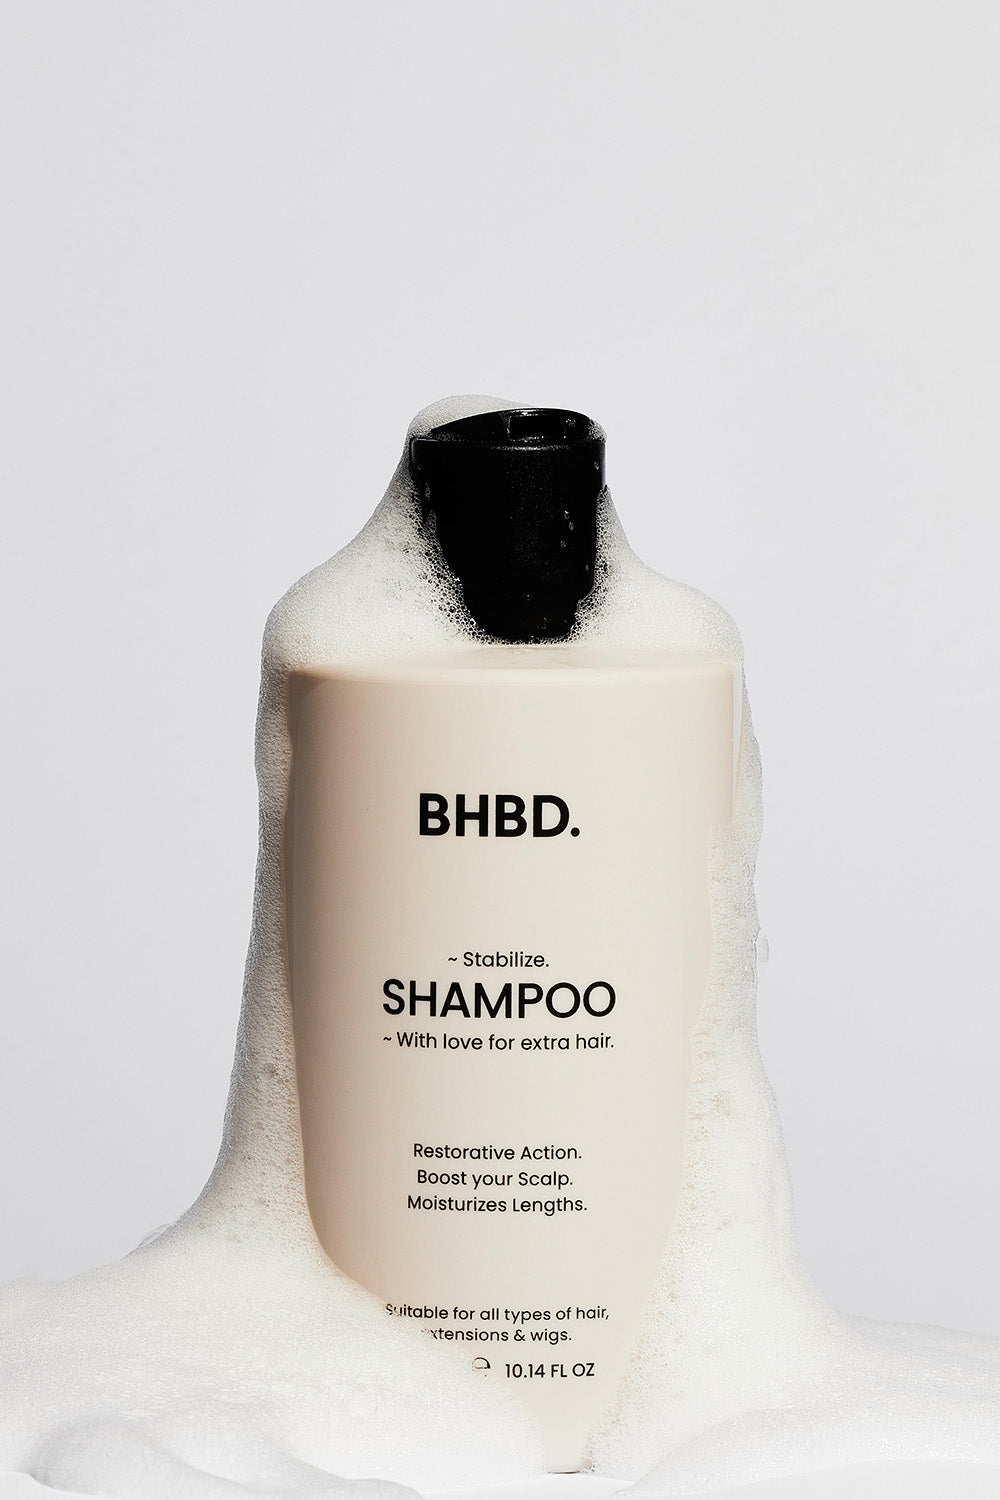 BHBD shampoo